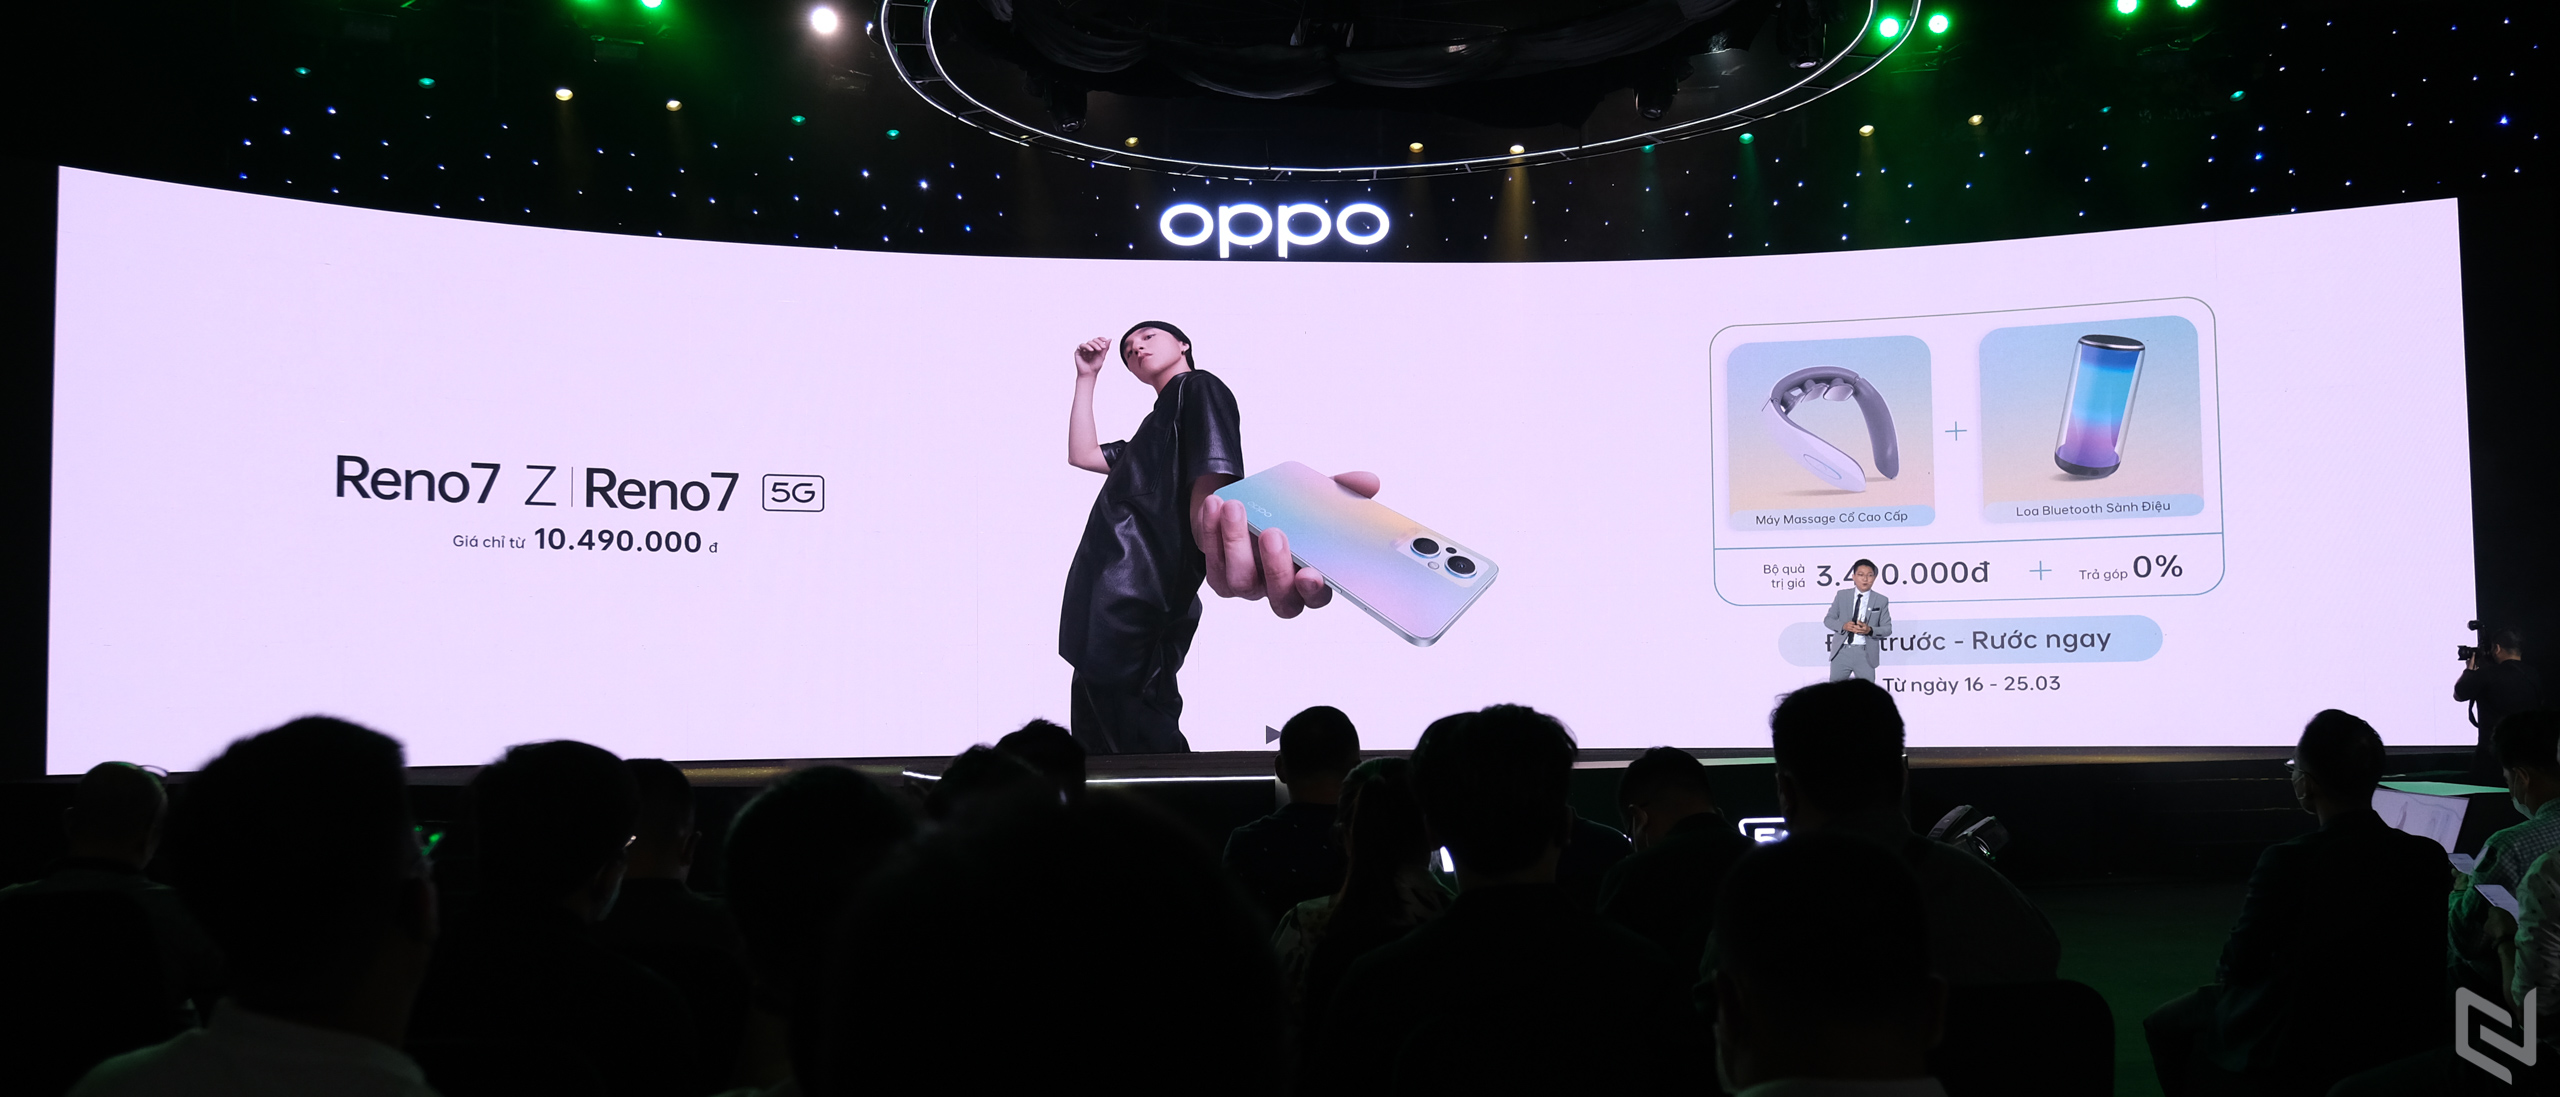 OPPO Reno7 Series 5G “Chuyên gia nhiếp ảnh chân dung” dành cho người dùng